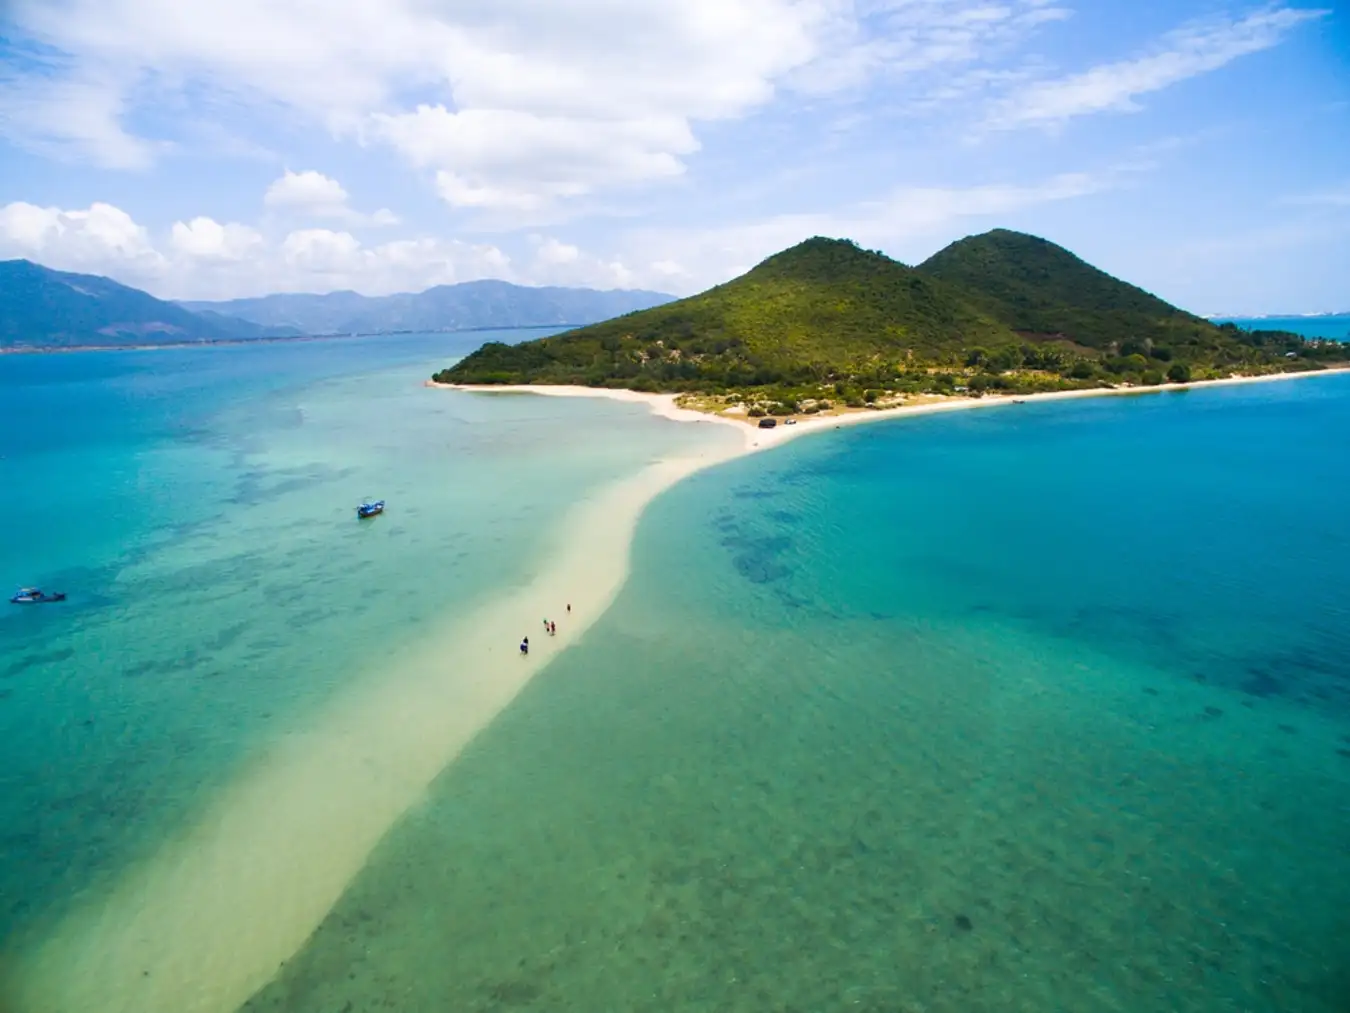 Đảo Điệp Sơn có con đường đi bộ giữa biển độc nhất vô nhị tại Việt Nam